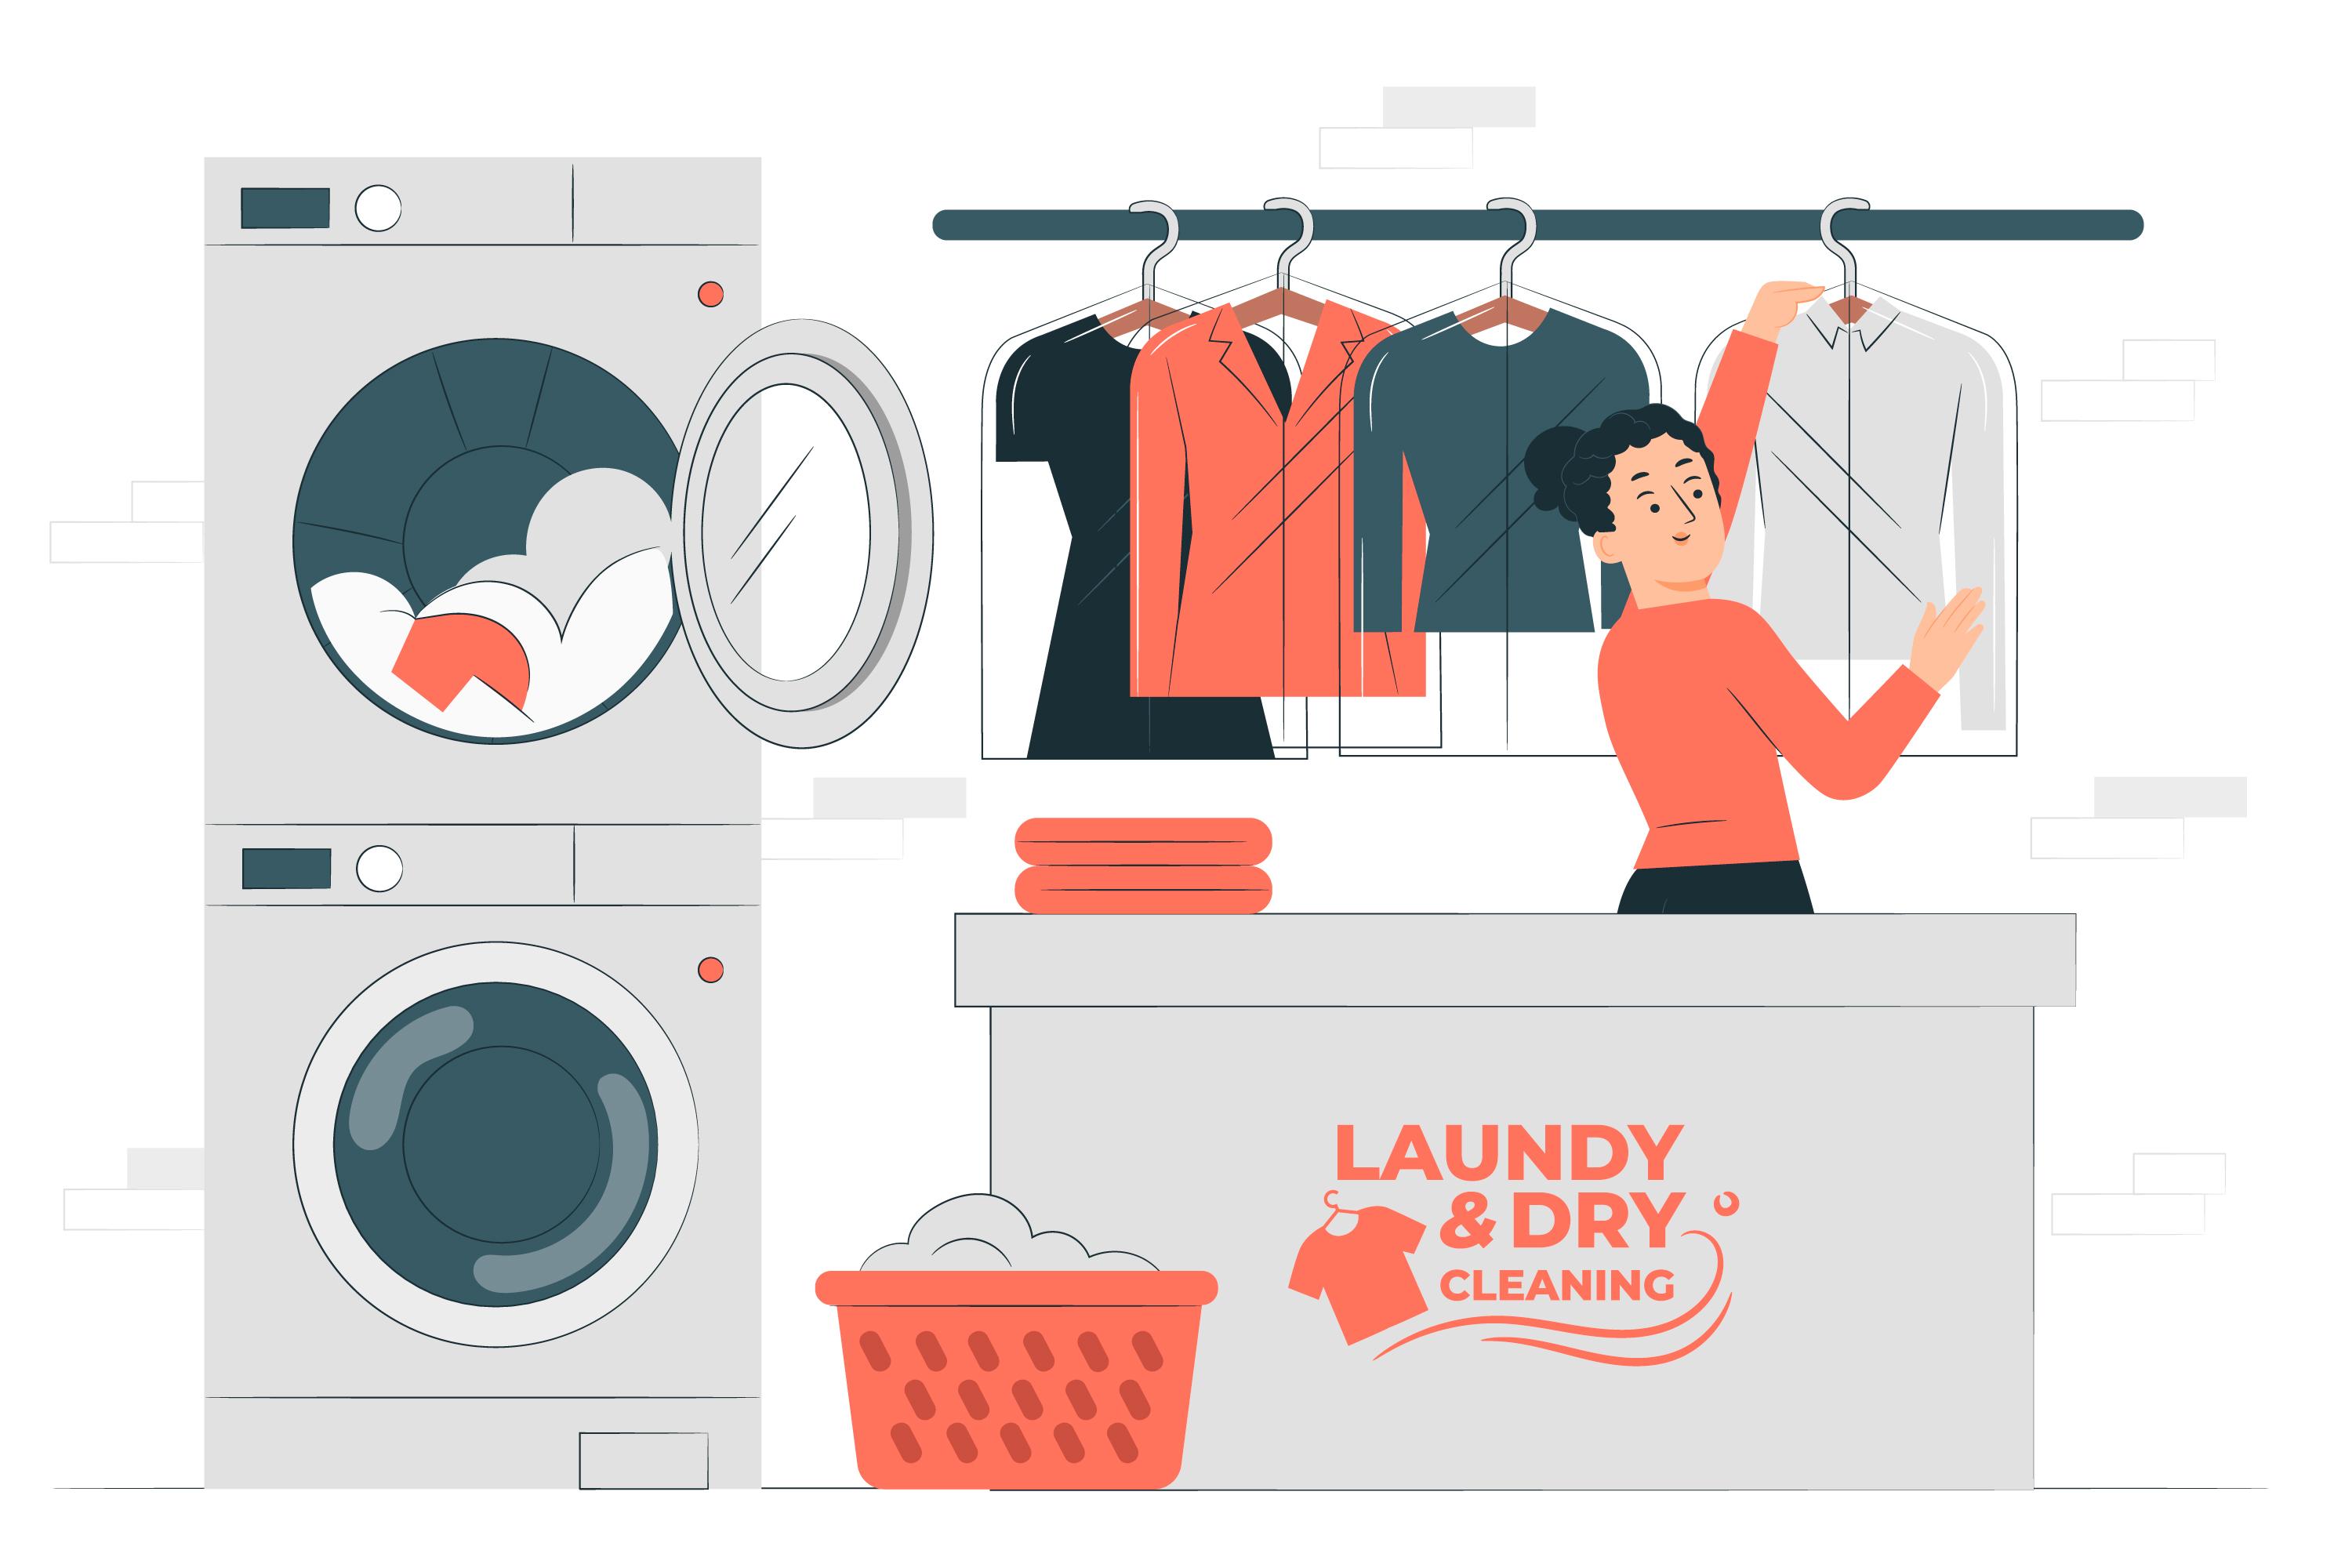 Apa yang di maksud laundry?